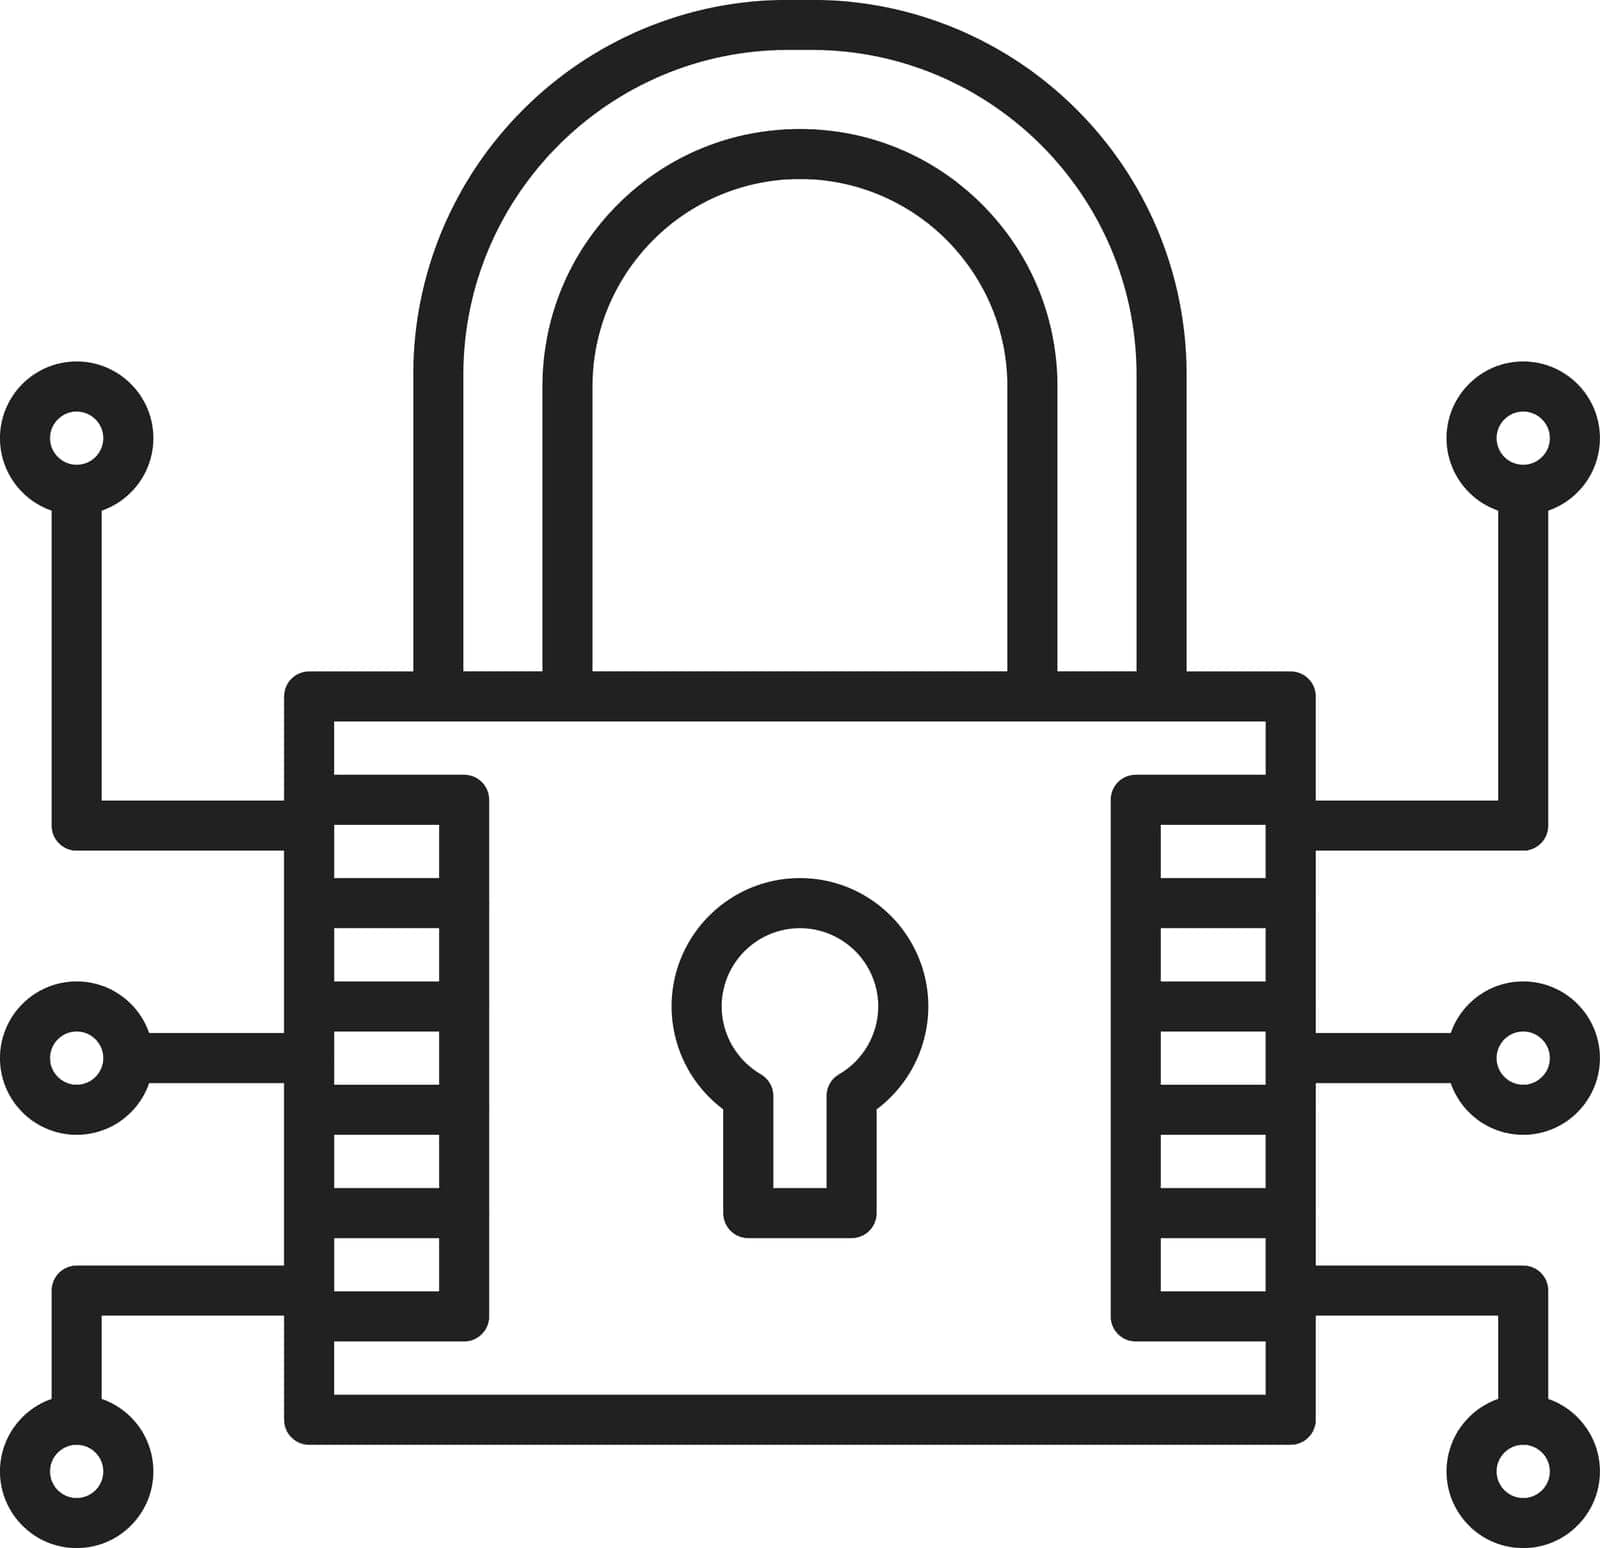 Data Encryption Icon Image. by ICONBUNNY